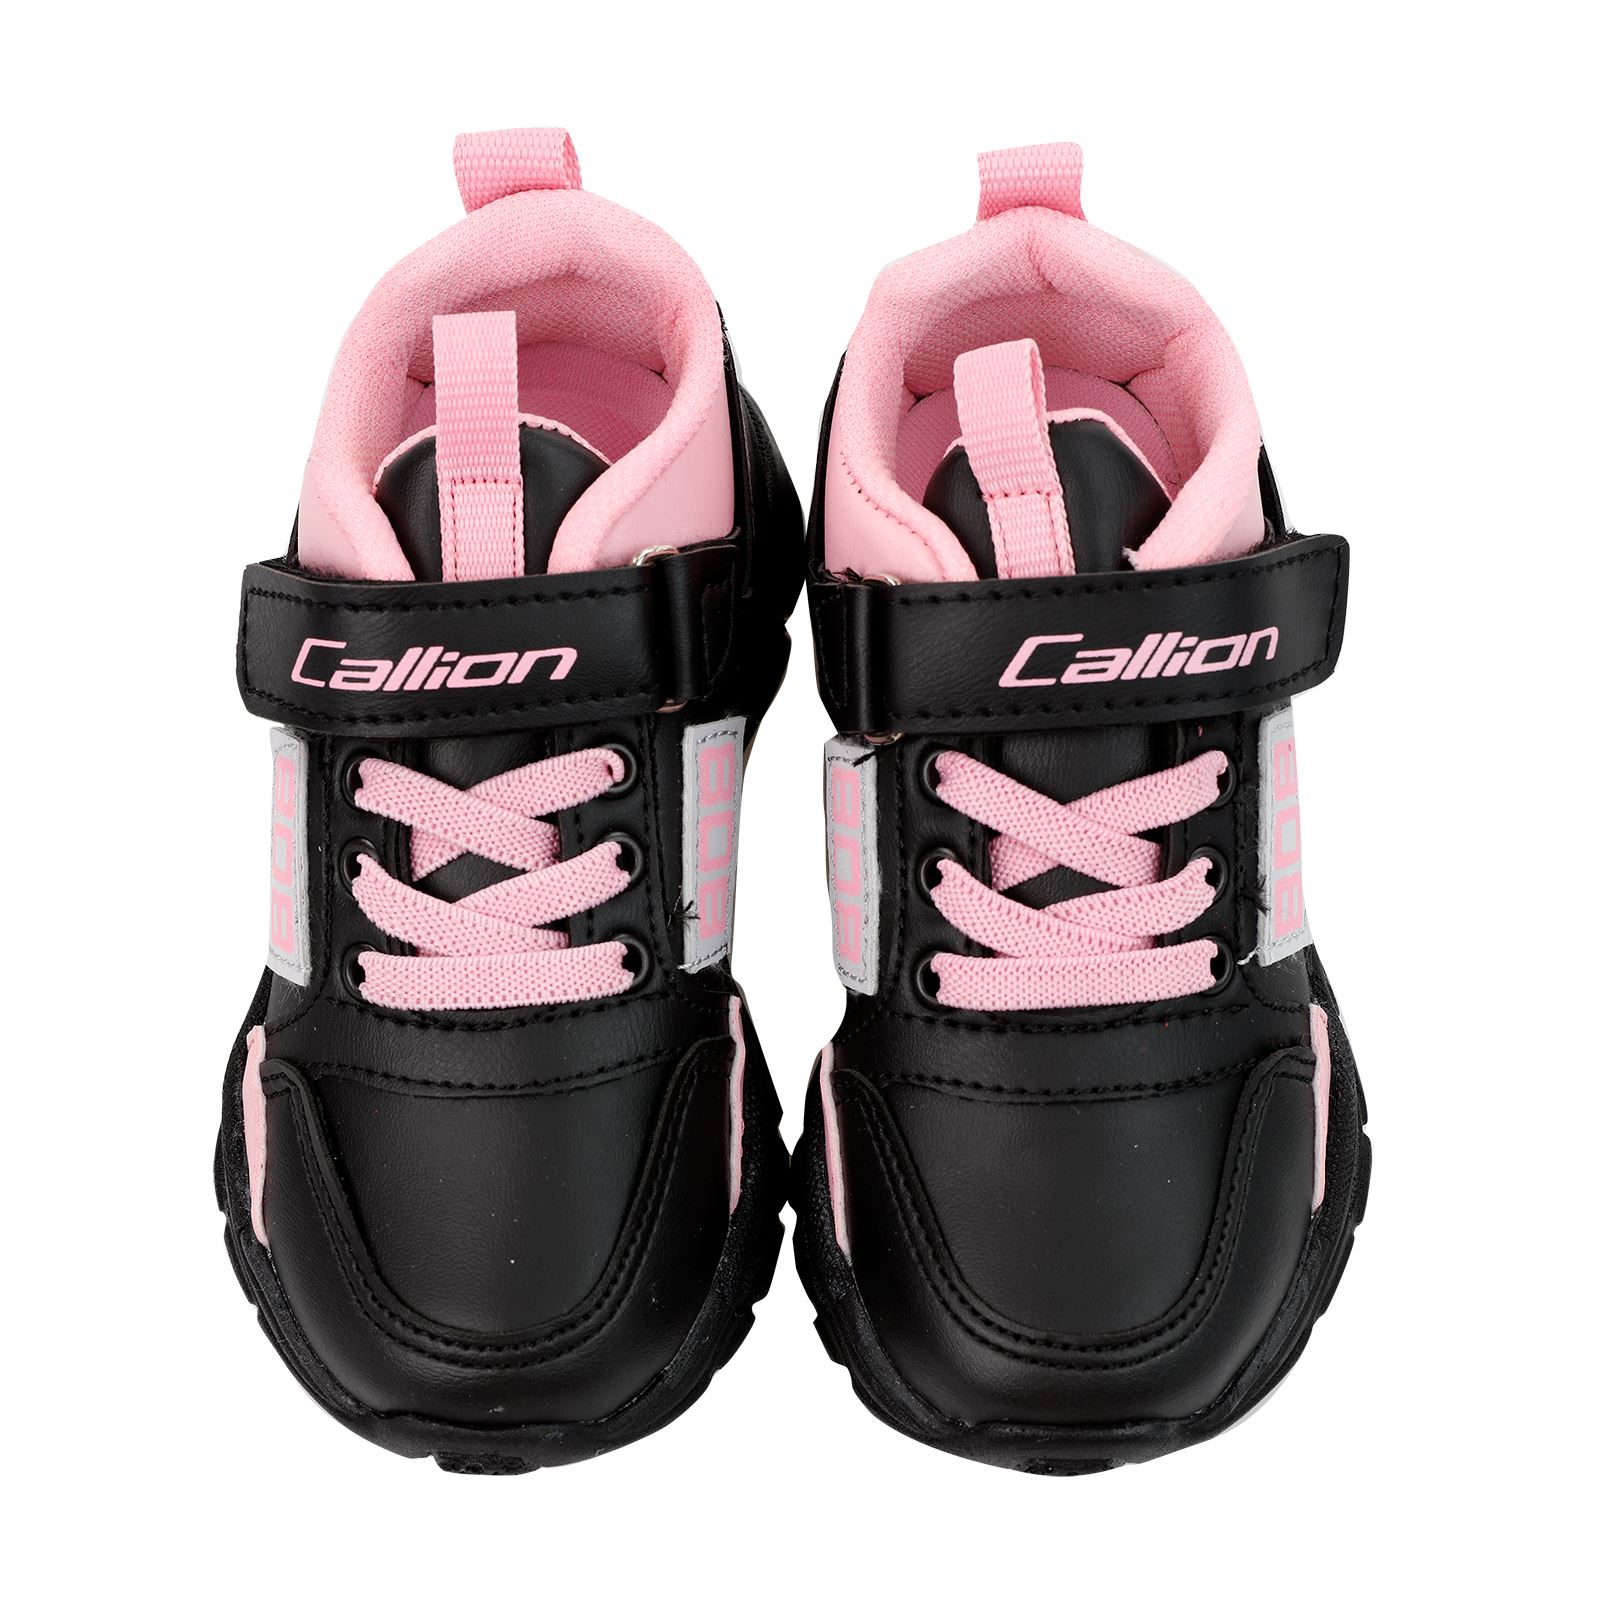 Callion Kız Çocuk Spor Ayakkabı 31-35 Numara Siyah-Pembe